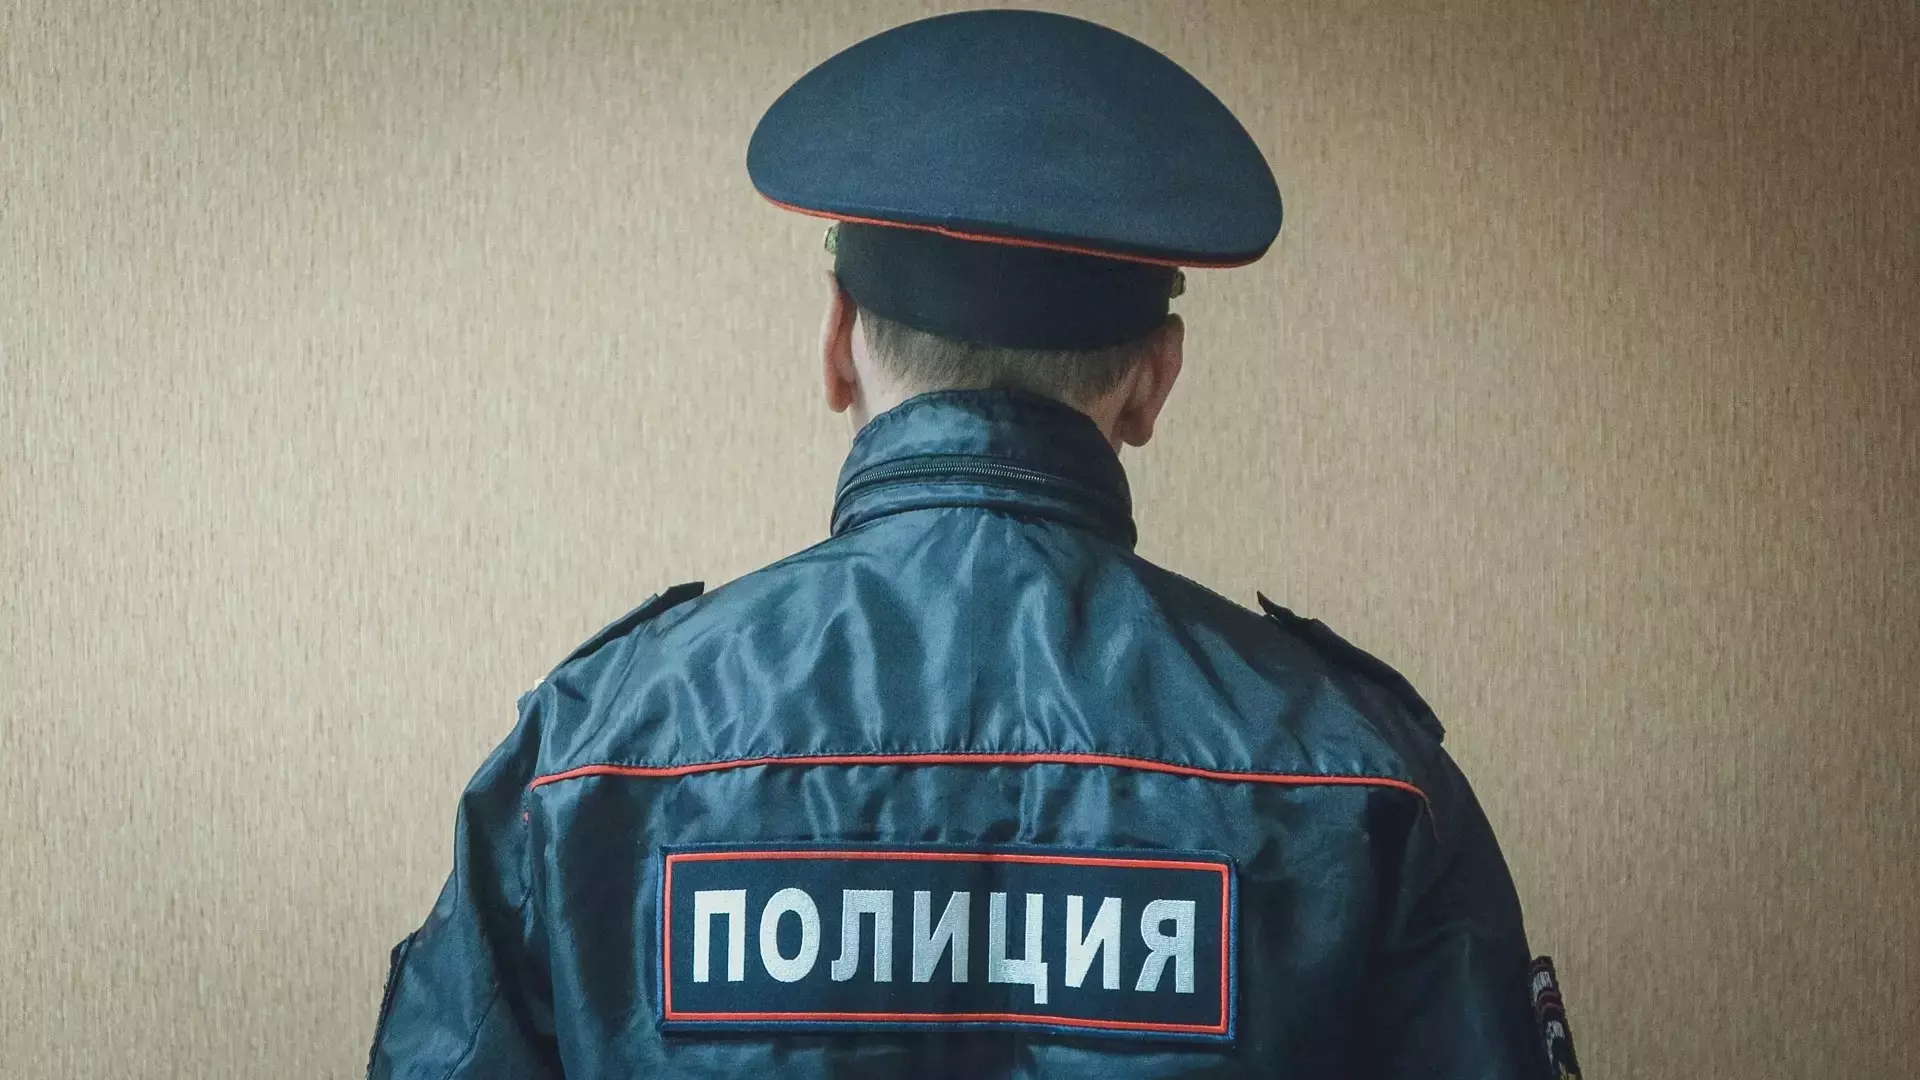 Югорчанам напомнили, чем прославился бывший главный полицейский Сатретдинов